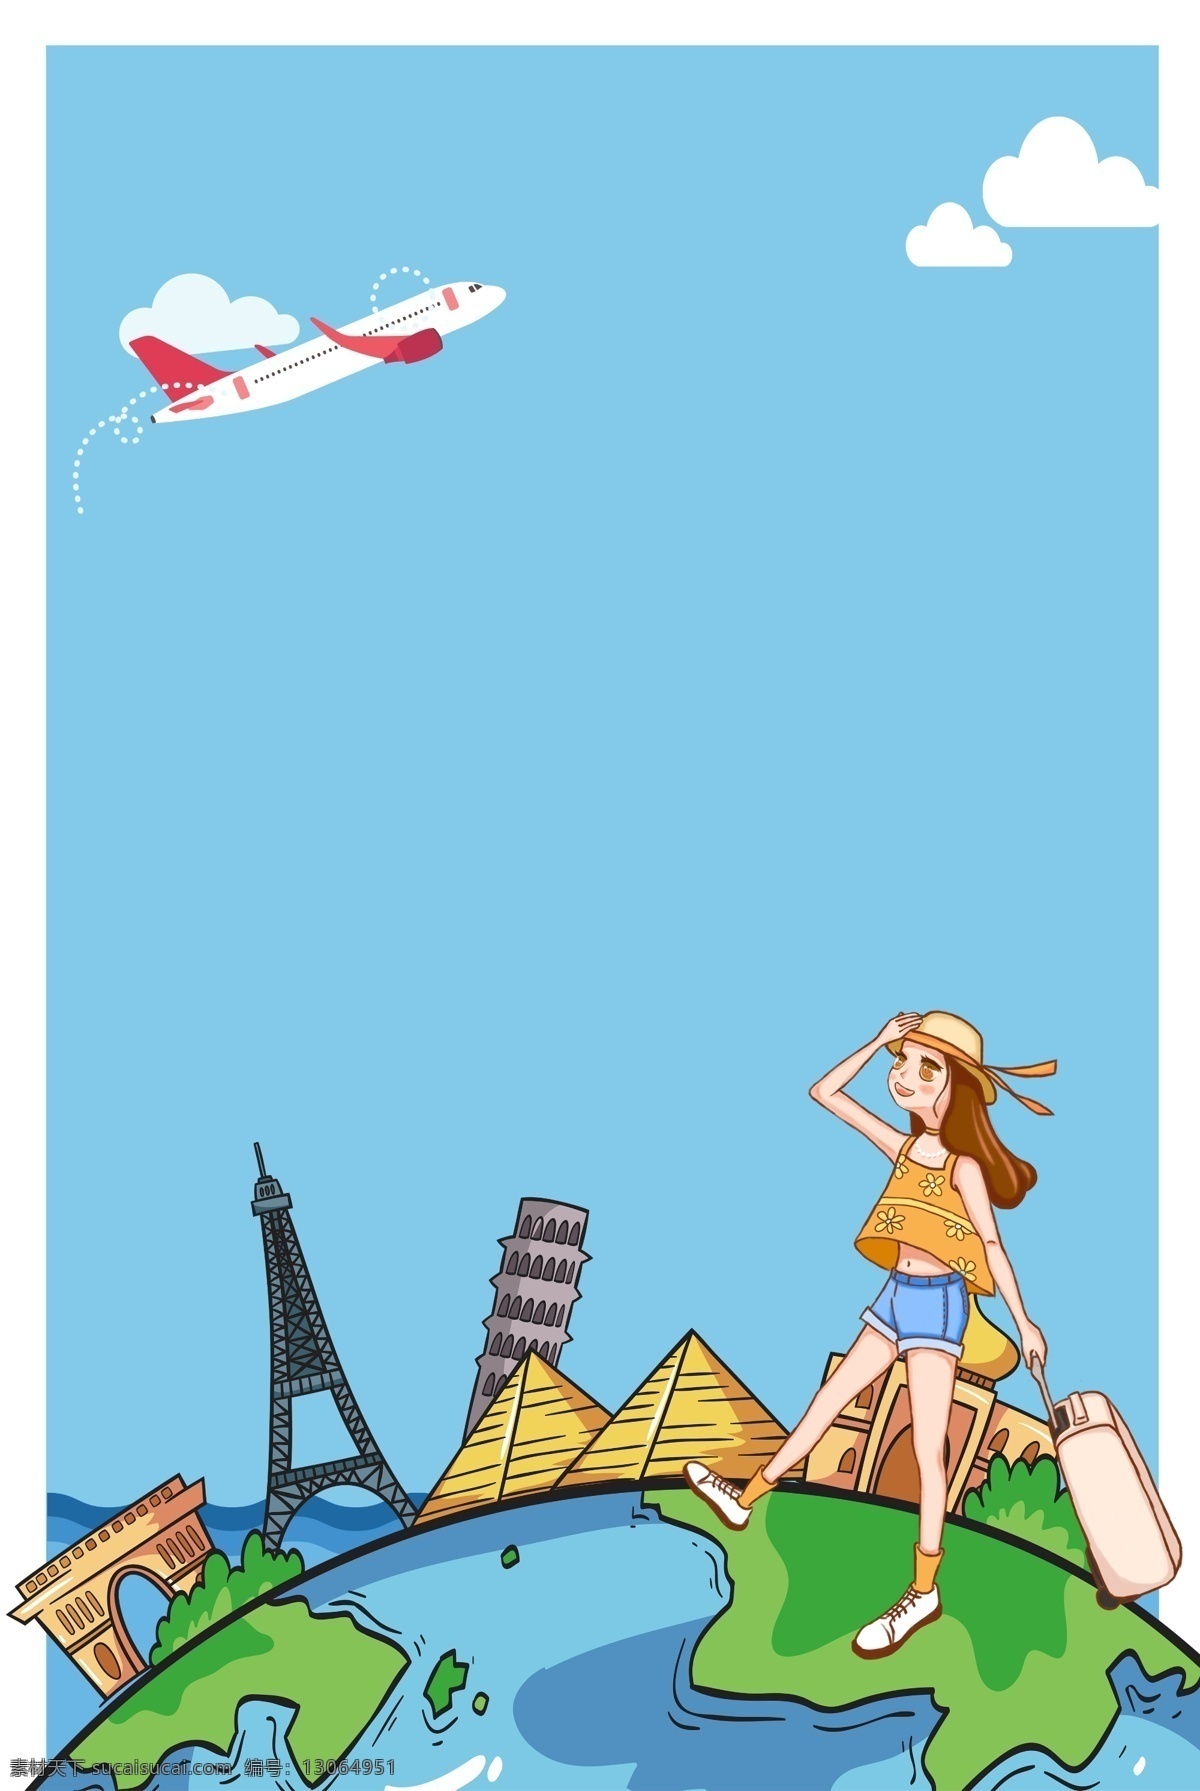 世界各地 旅游 海报 背景 假期 行李 戴 草帽 女生 毕业旅游 休闲 出发 夏天 女孩 世界各地旅游